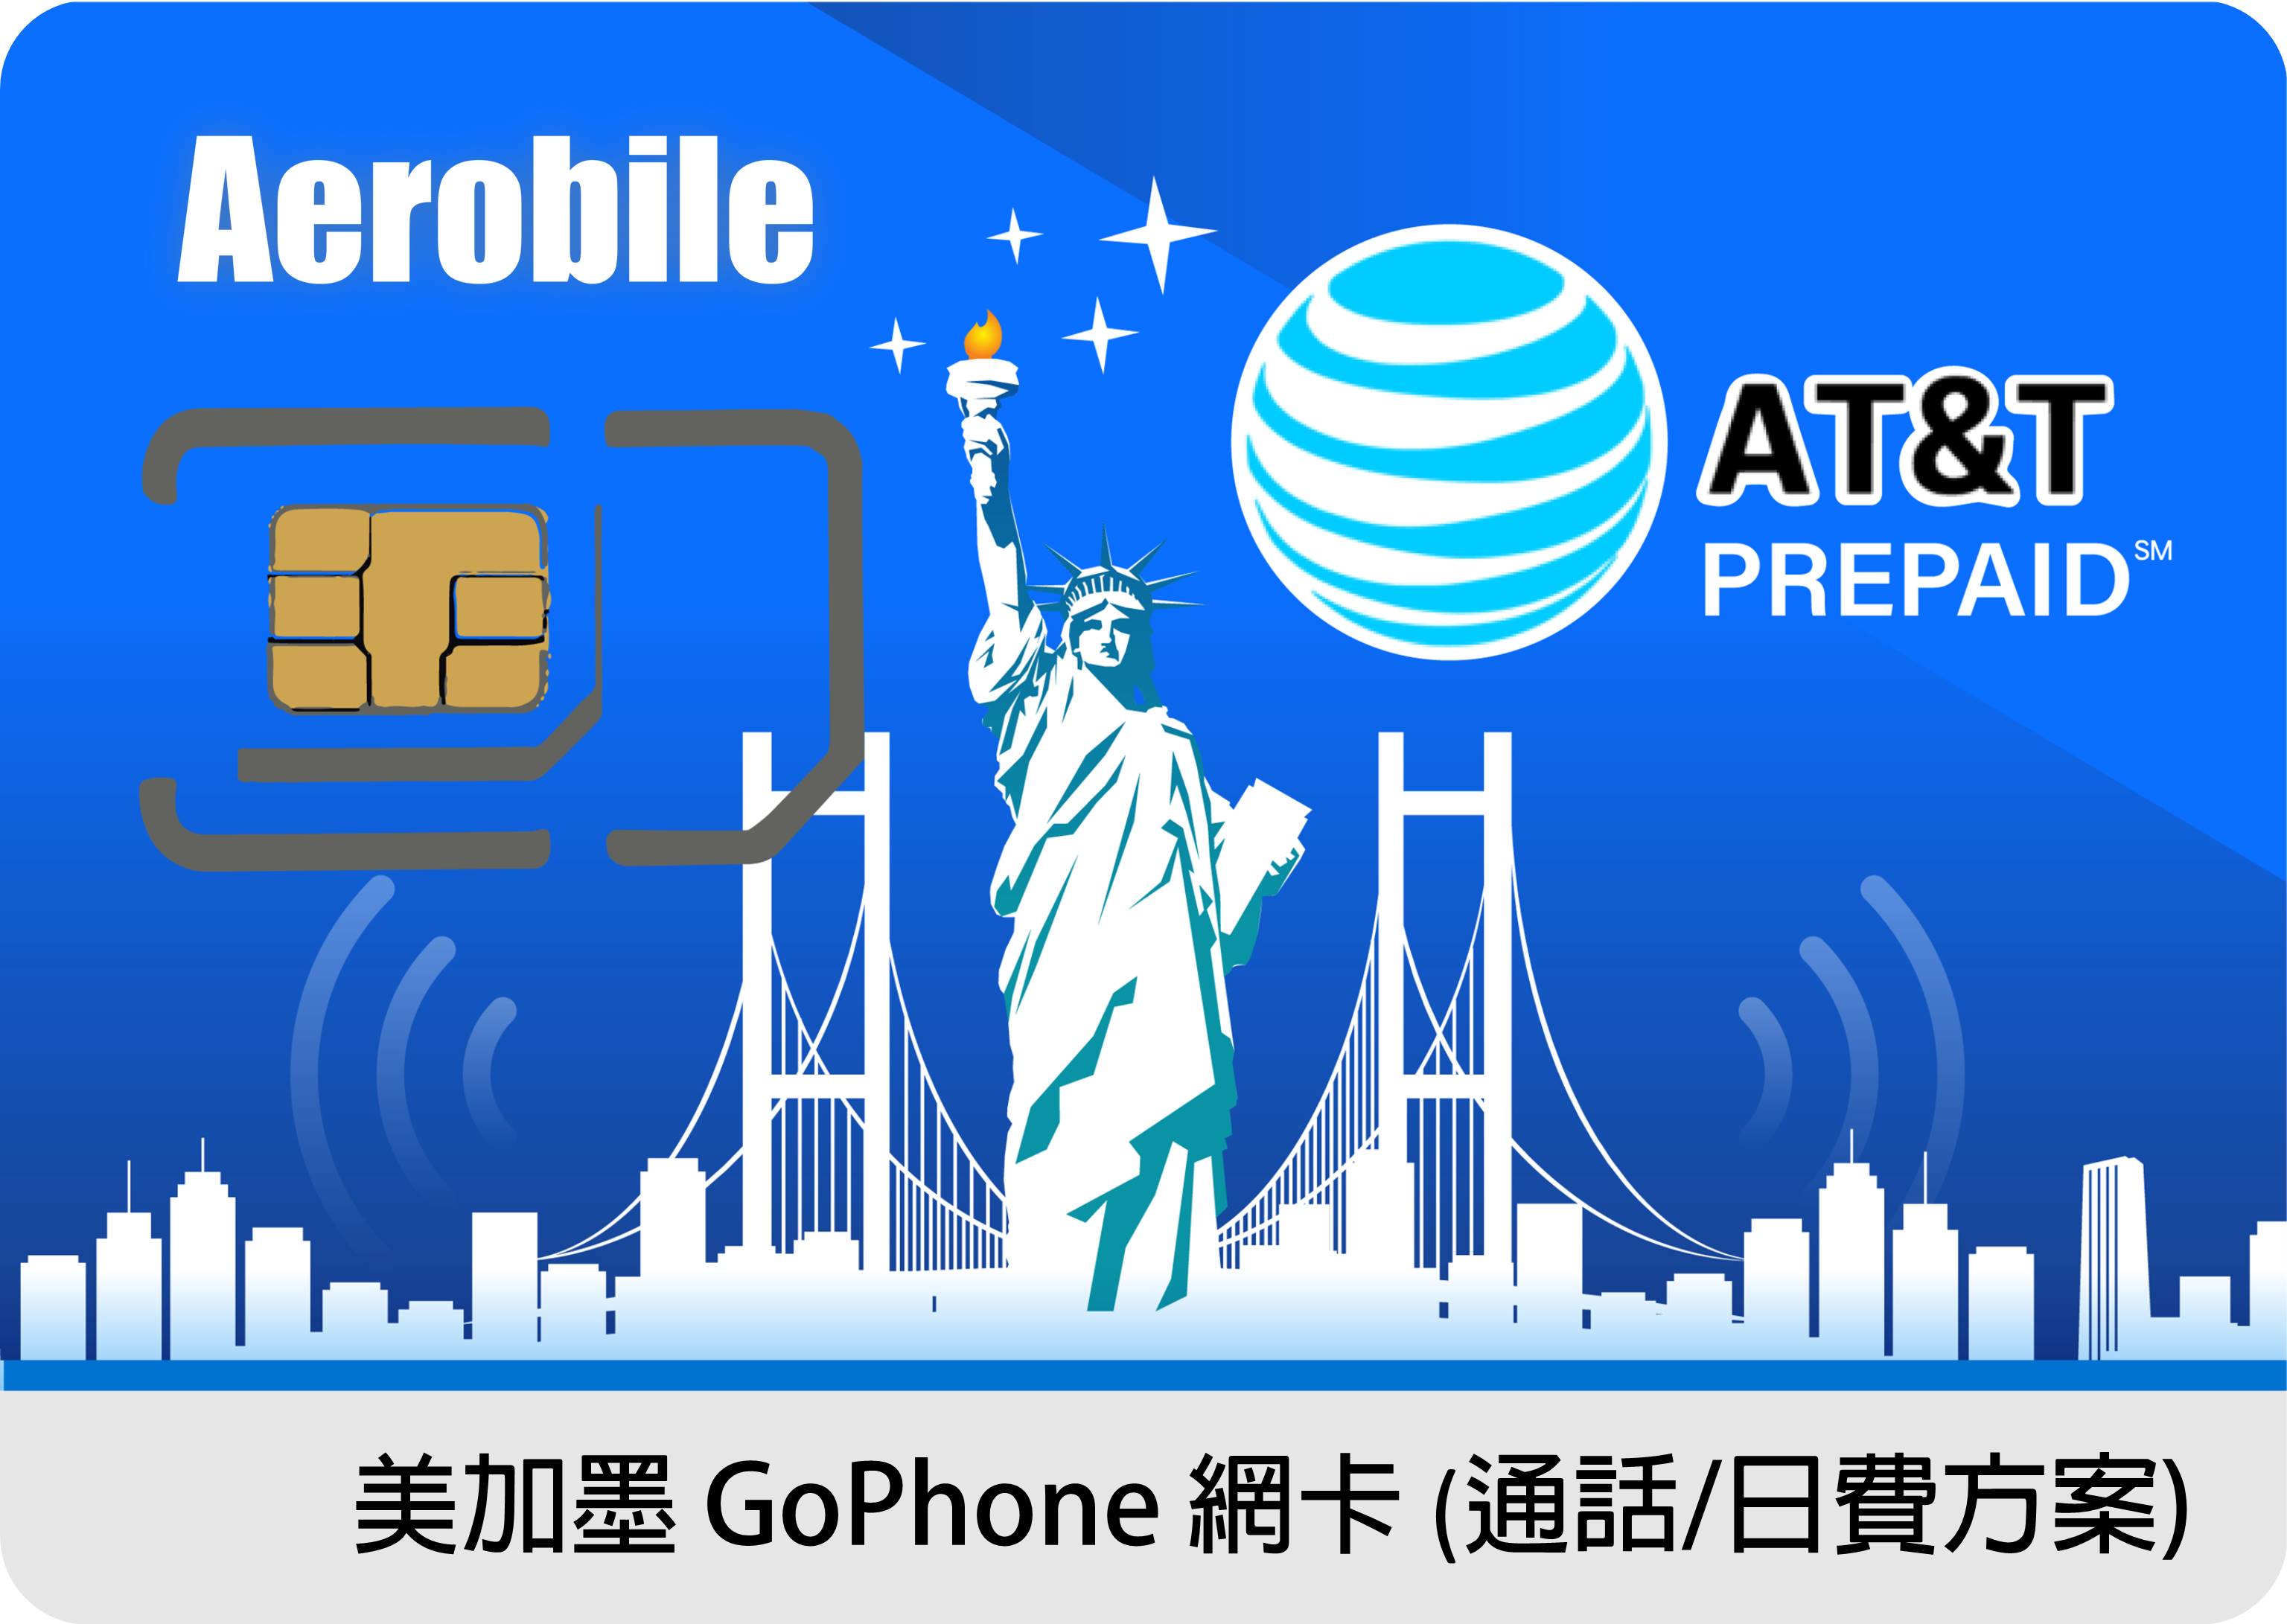 美國加拿大墨西哥AT&T SIM原生上網卡5-24天高速上網吃到飽+無限通話(不可續約)